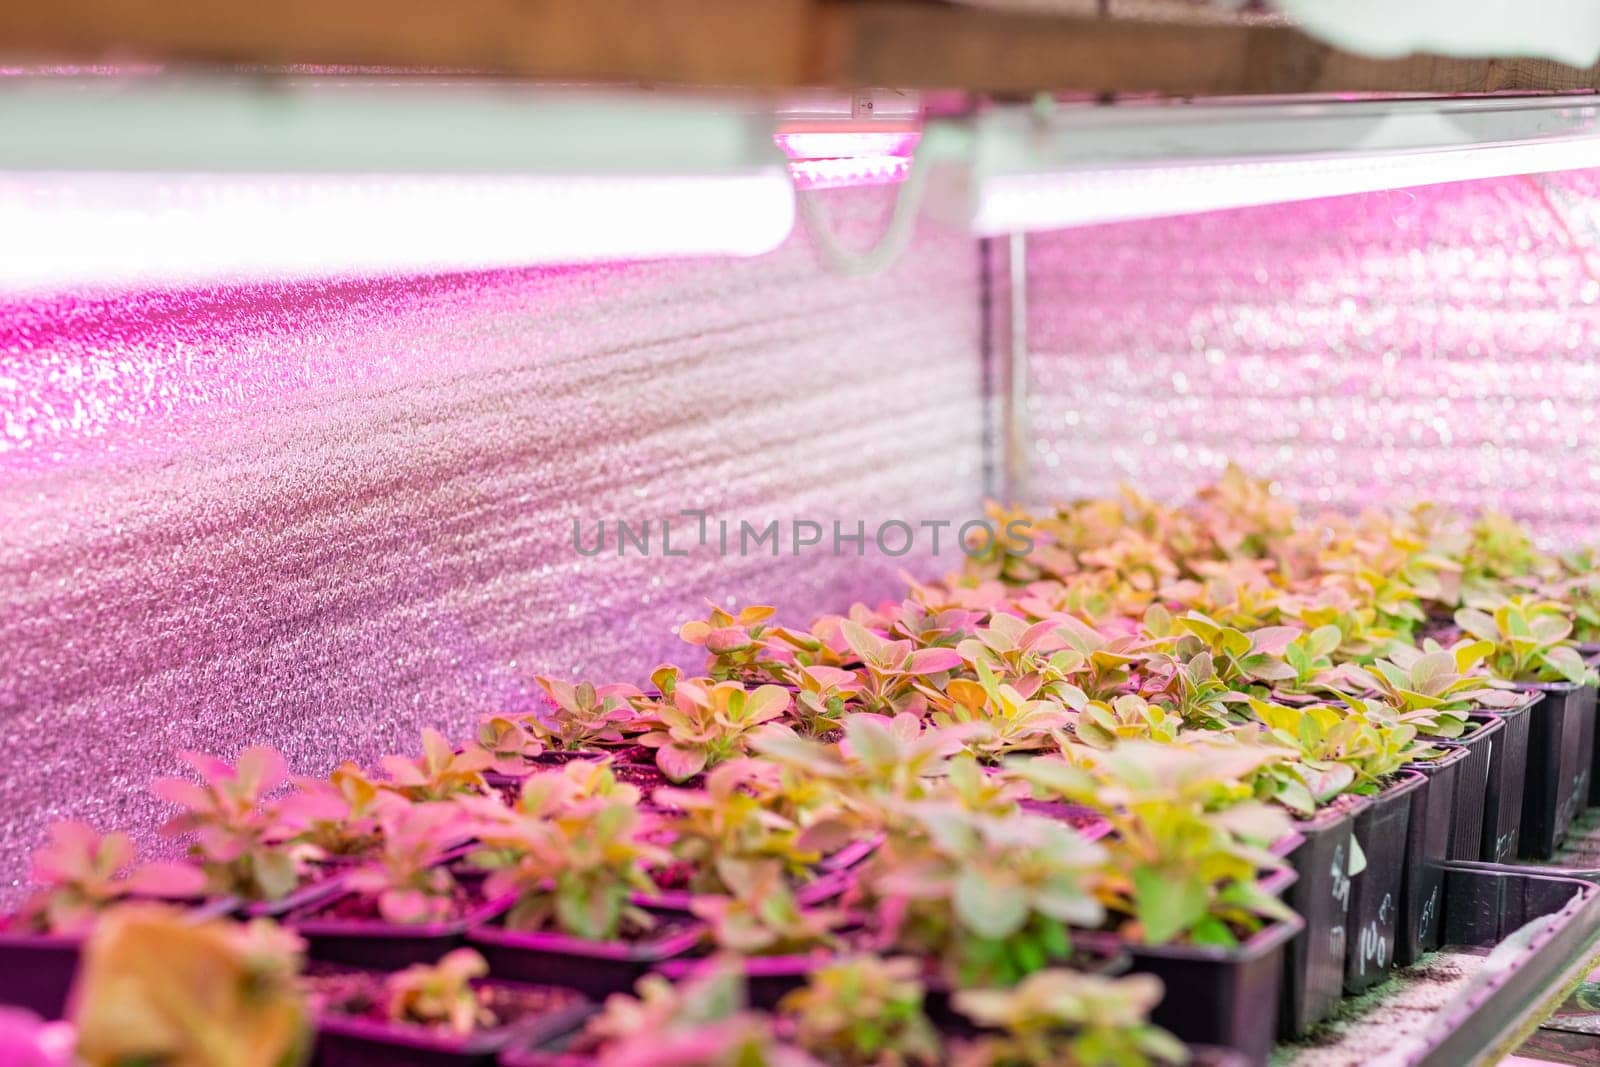 Growing flower seedlings indoors under full spectrum LED lighting. Plants are standing on shelves.